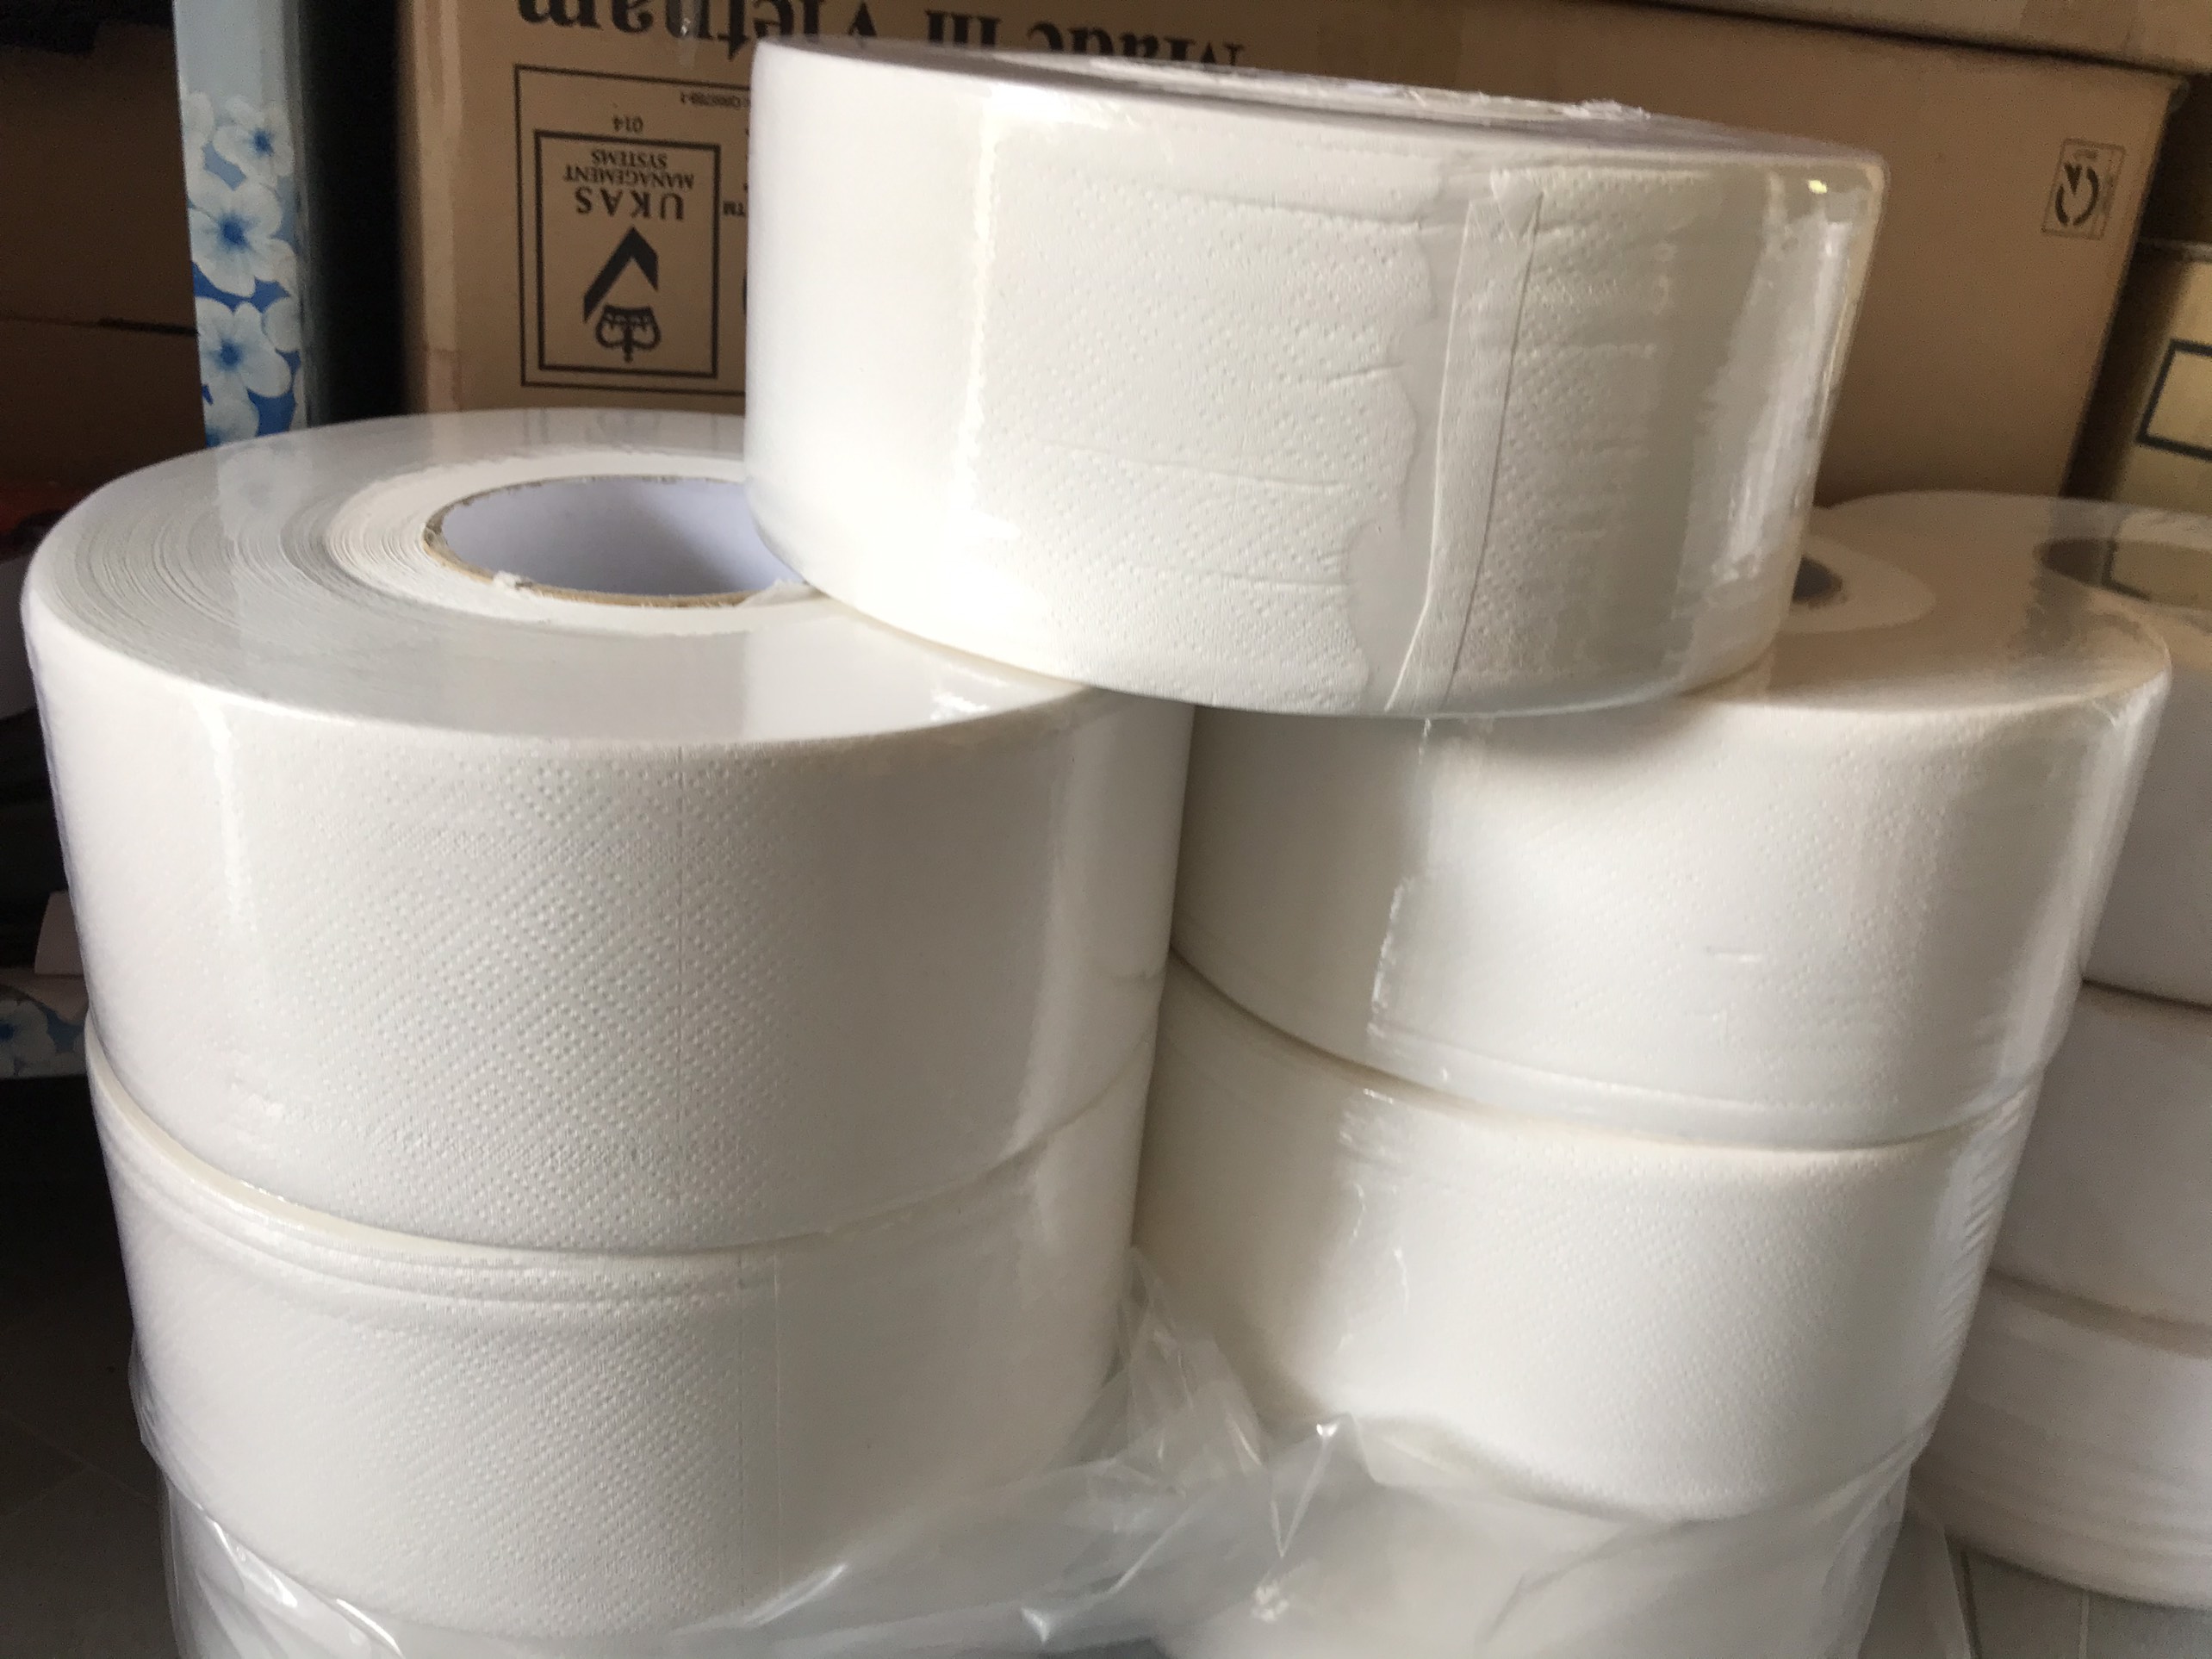 giấy vệ sinh cuộn loại lớn (500gr) 2